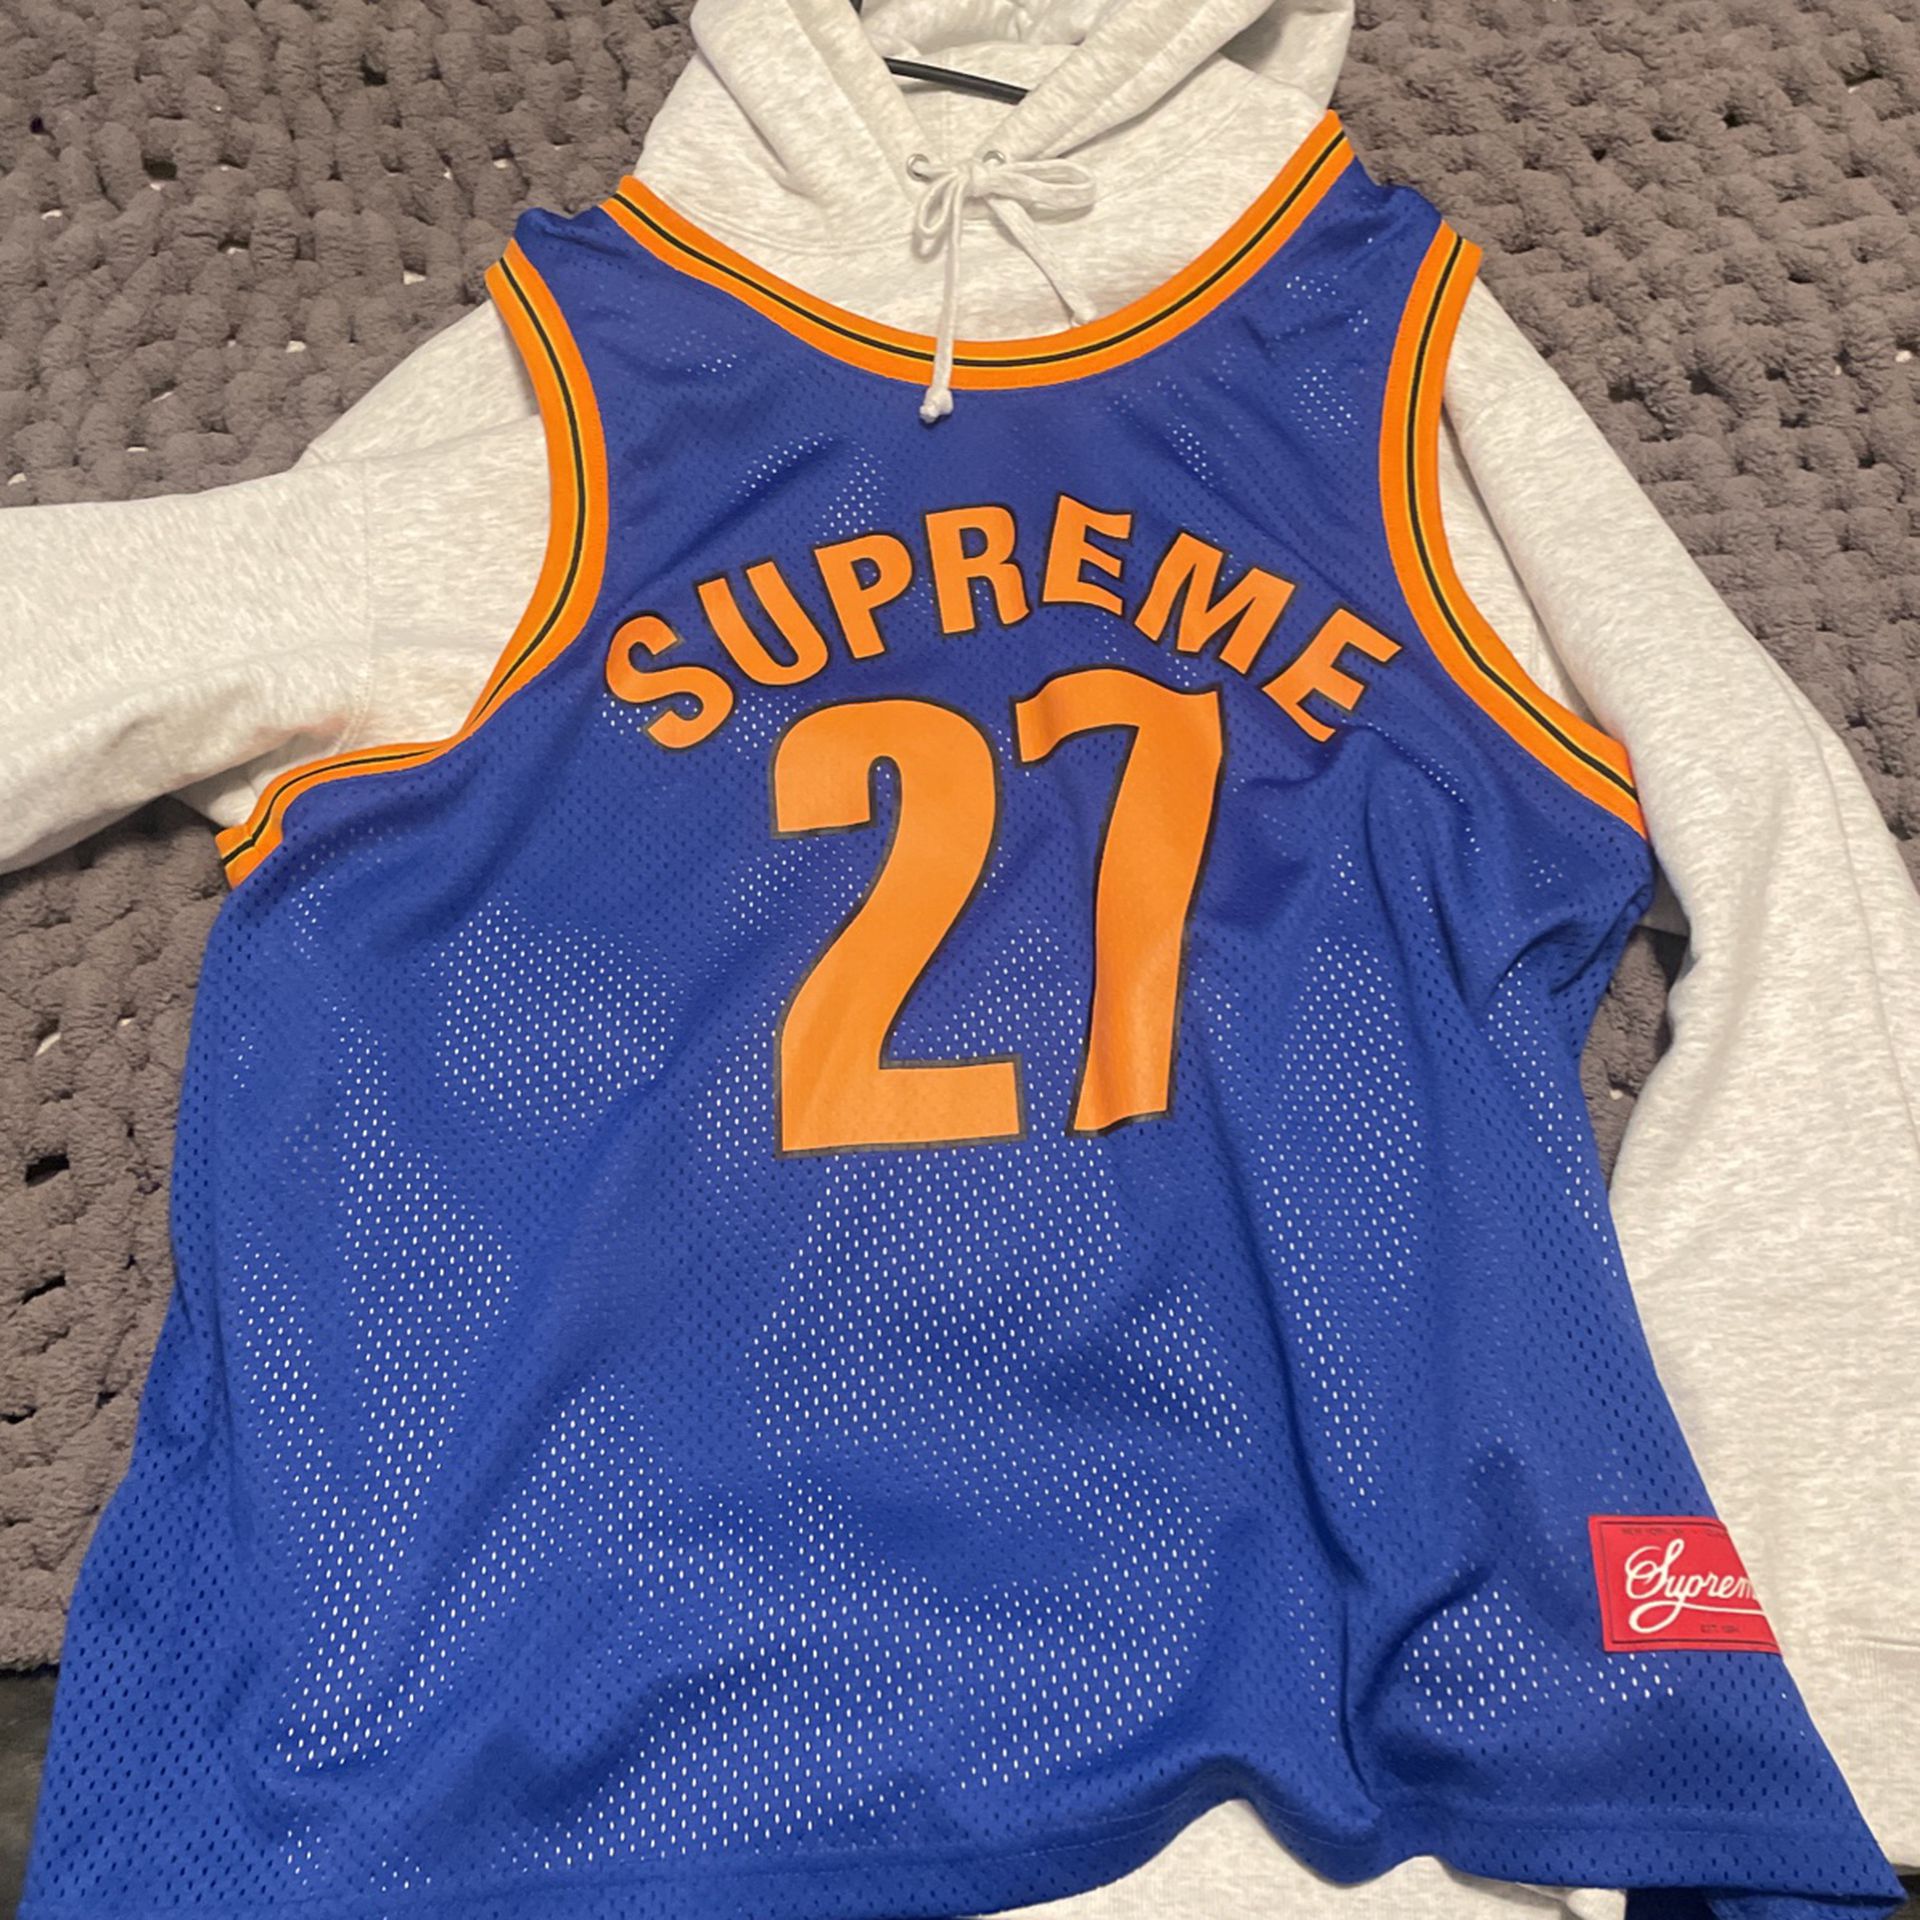 supreme basketball jersey hooded sweatshirt